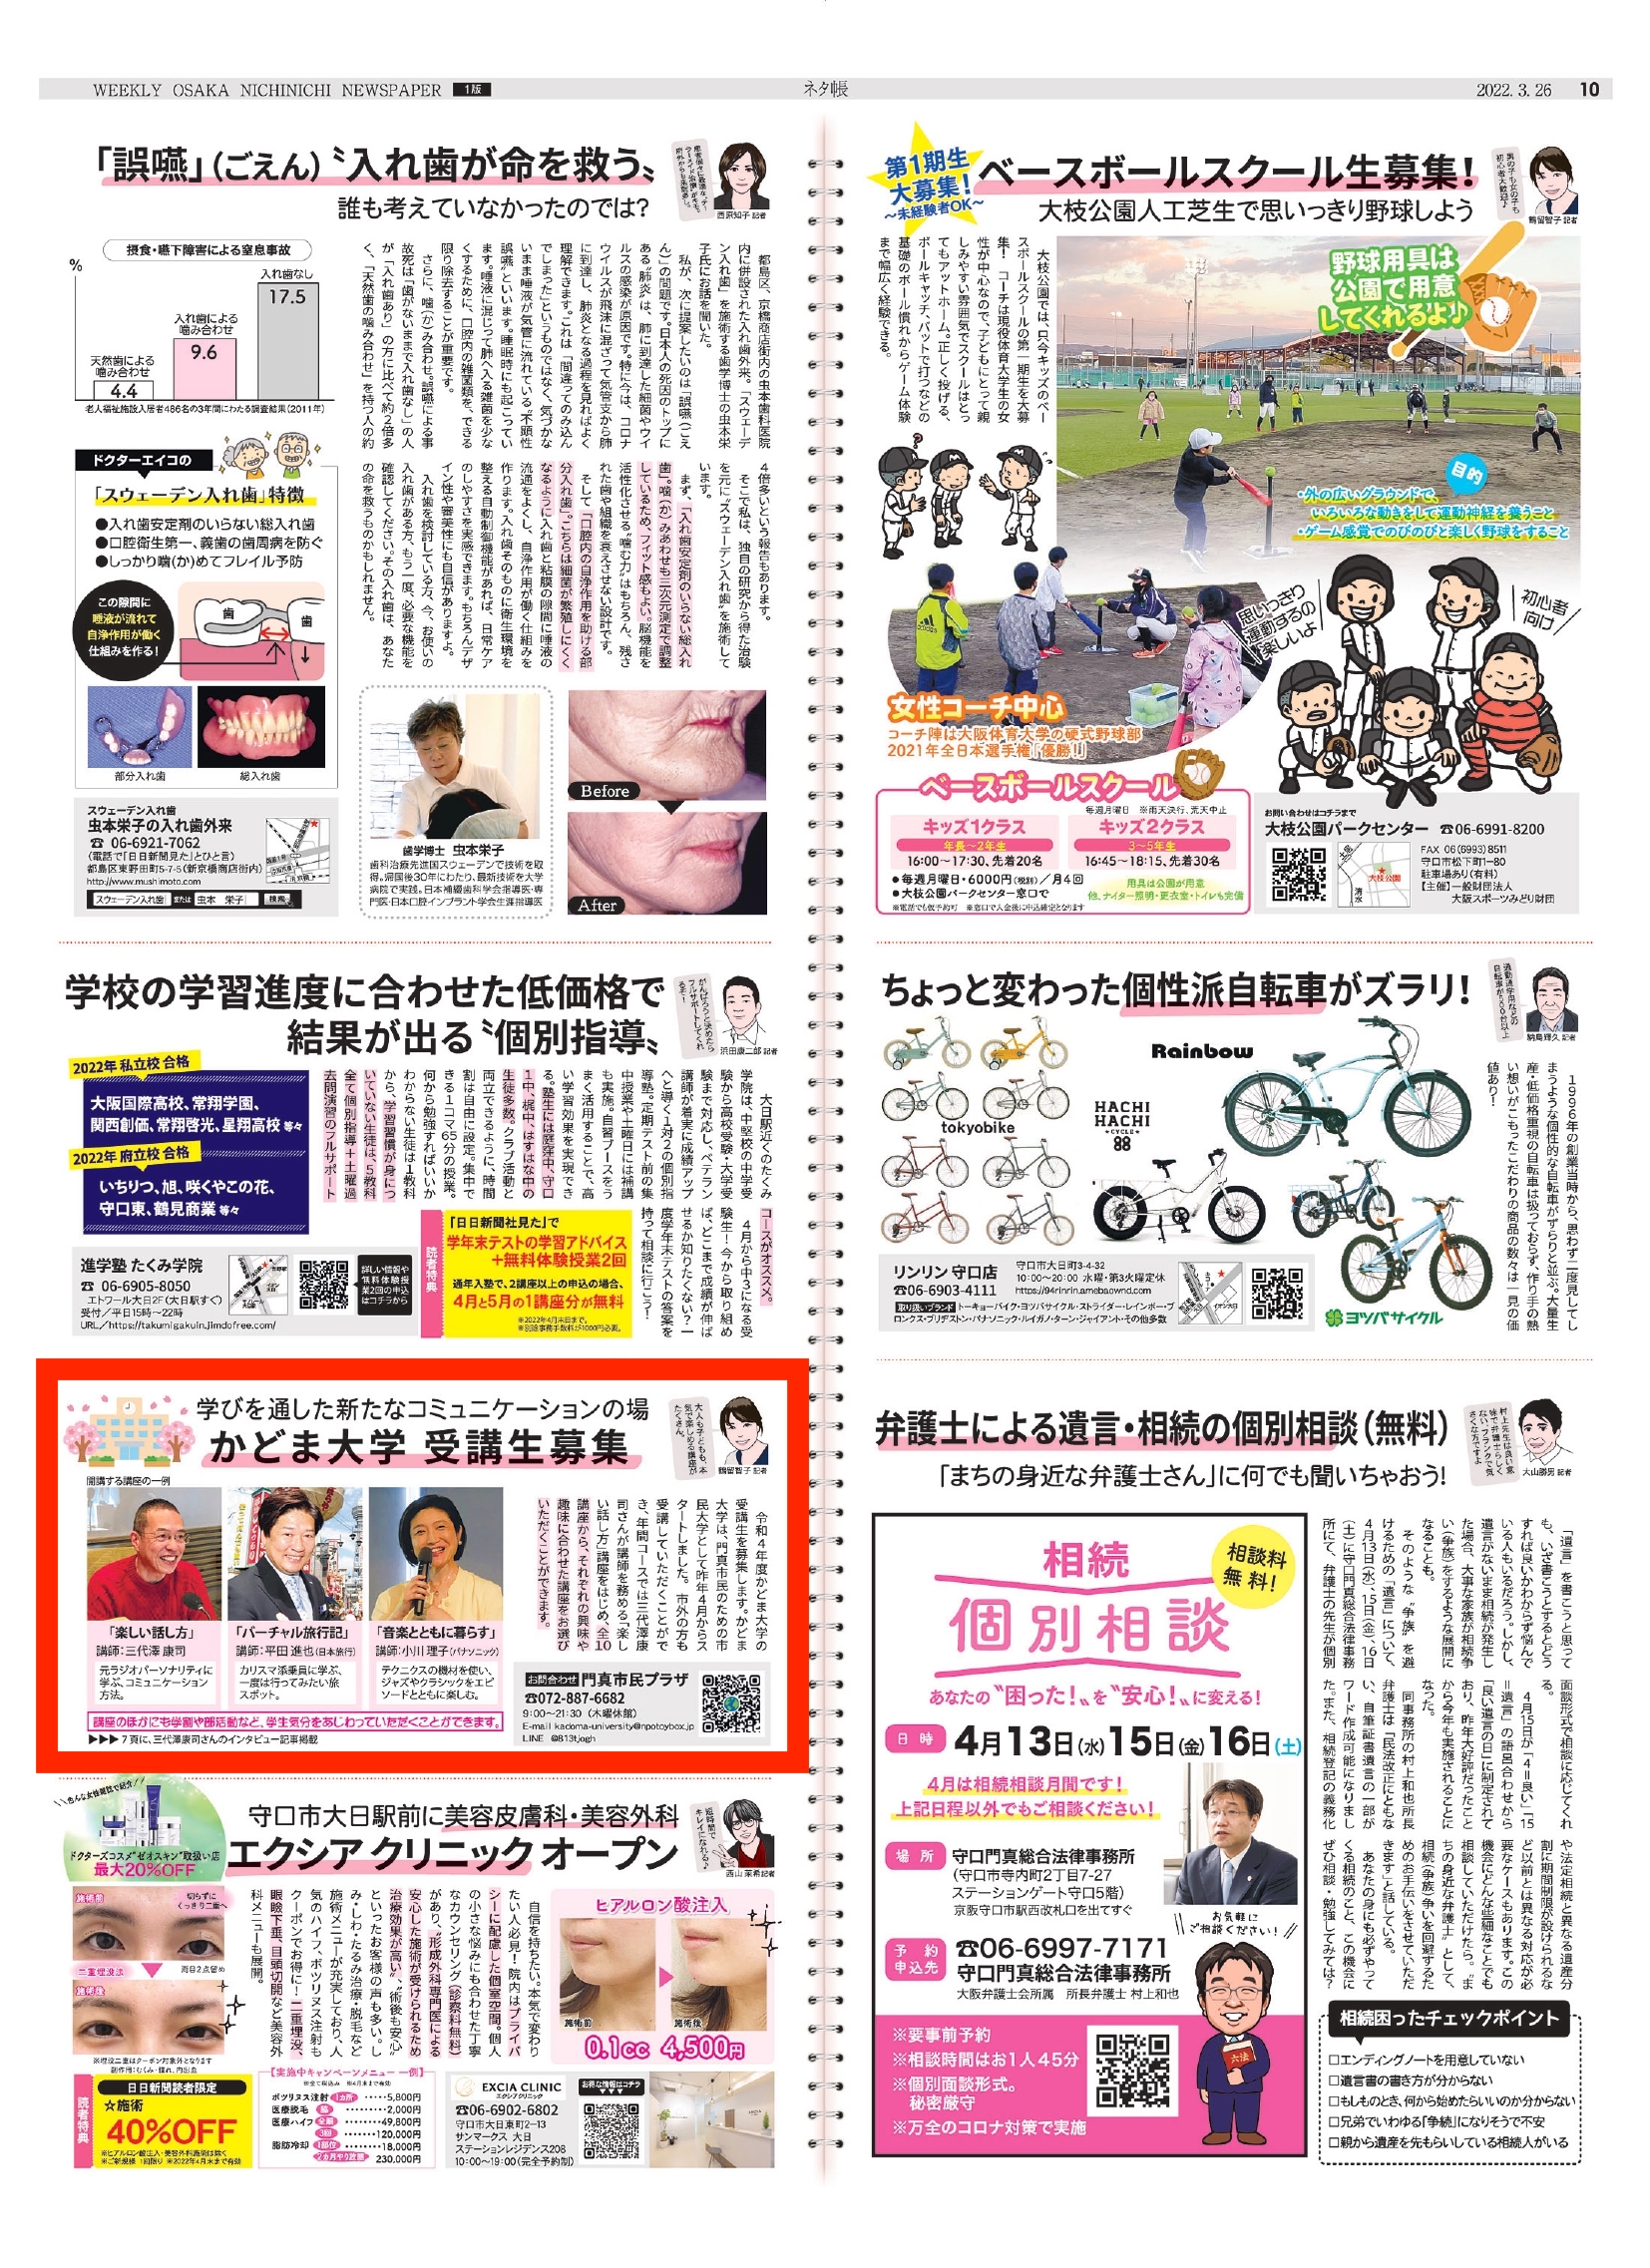 [週刊]大阪日日新聞にかどま大学の記事を掲載いただきました